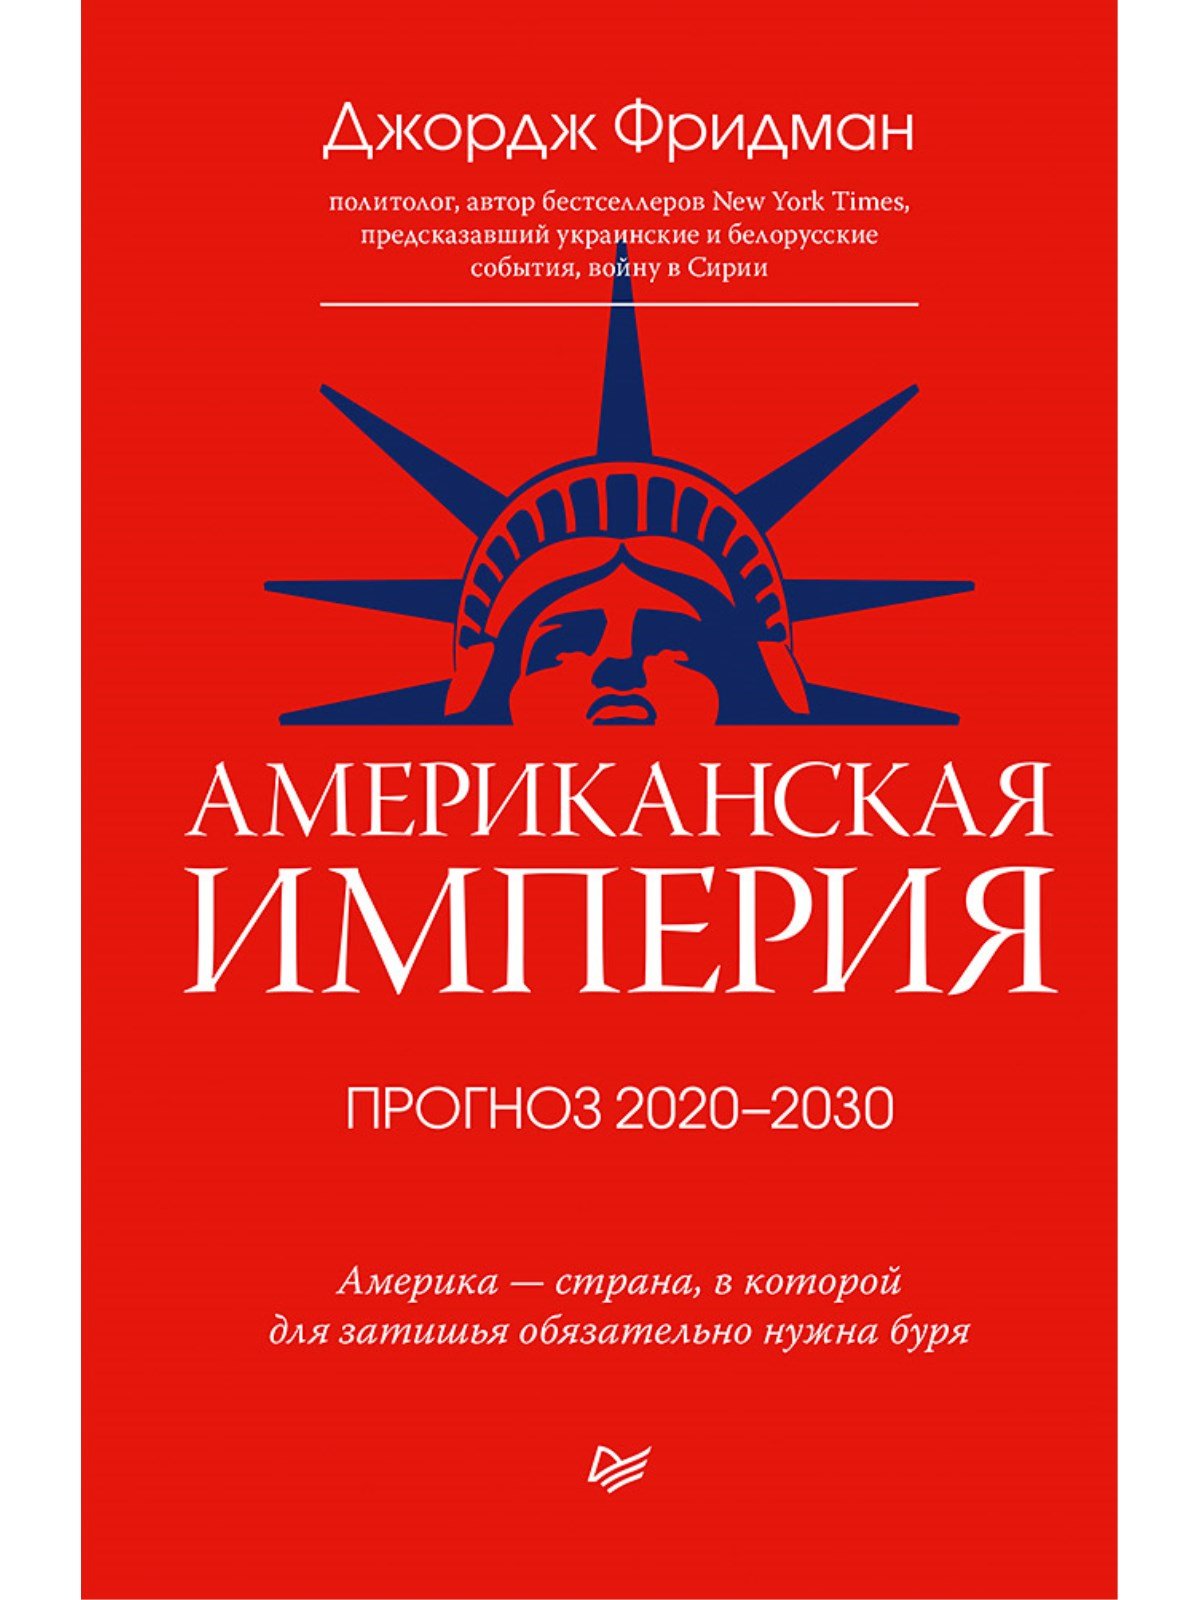 Американская империя. Прогноз 2020-2030 гг.. Фридман Джордж